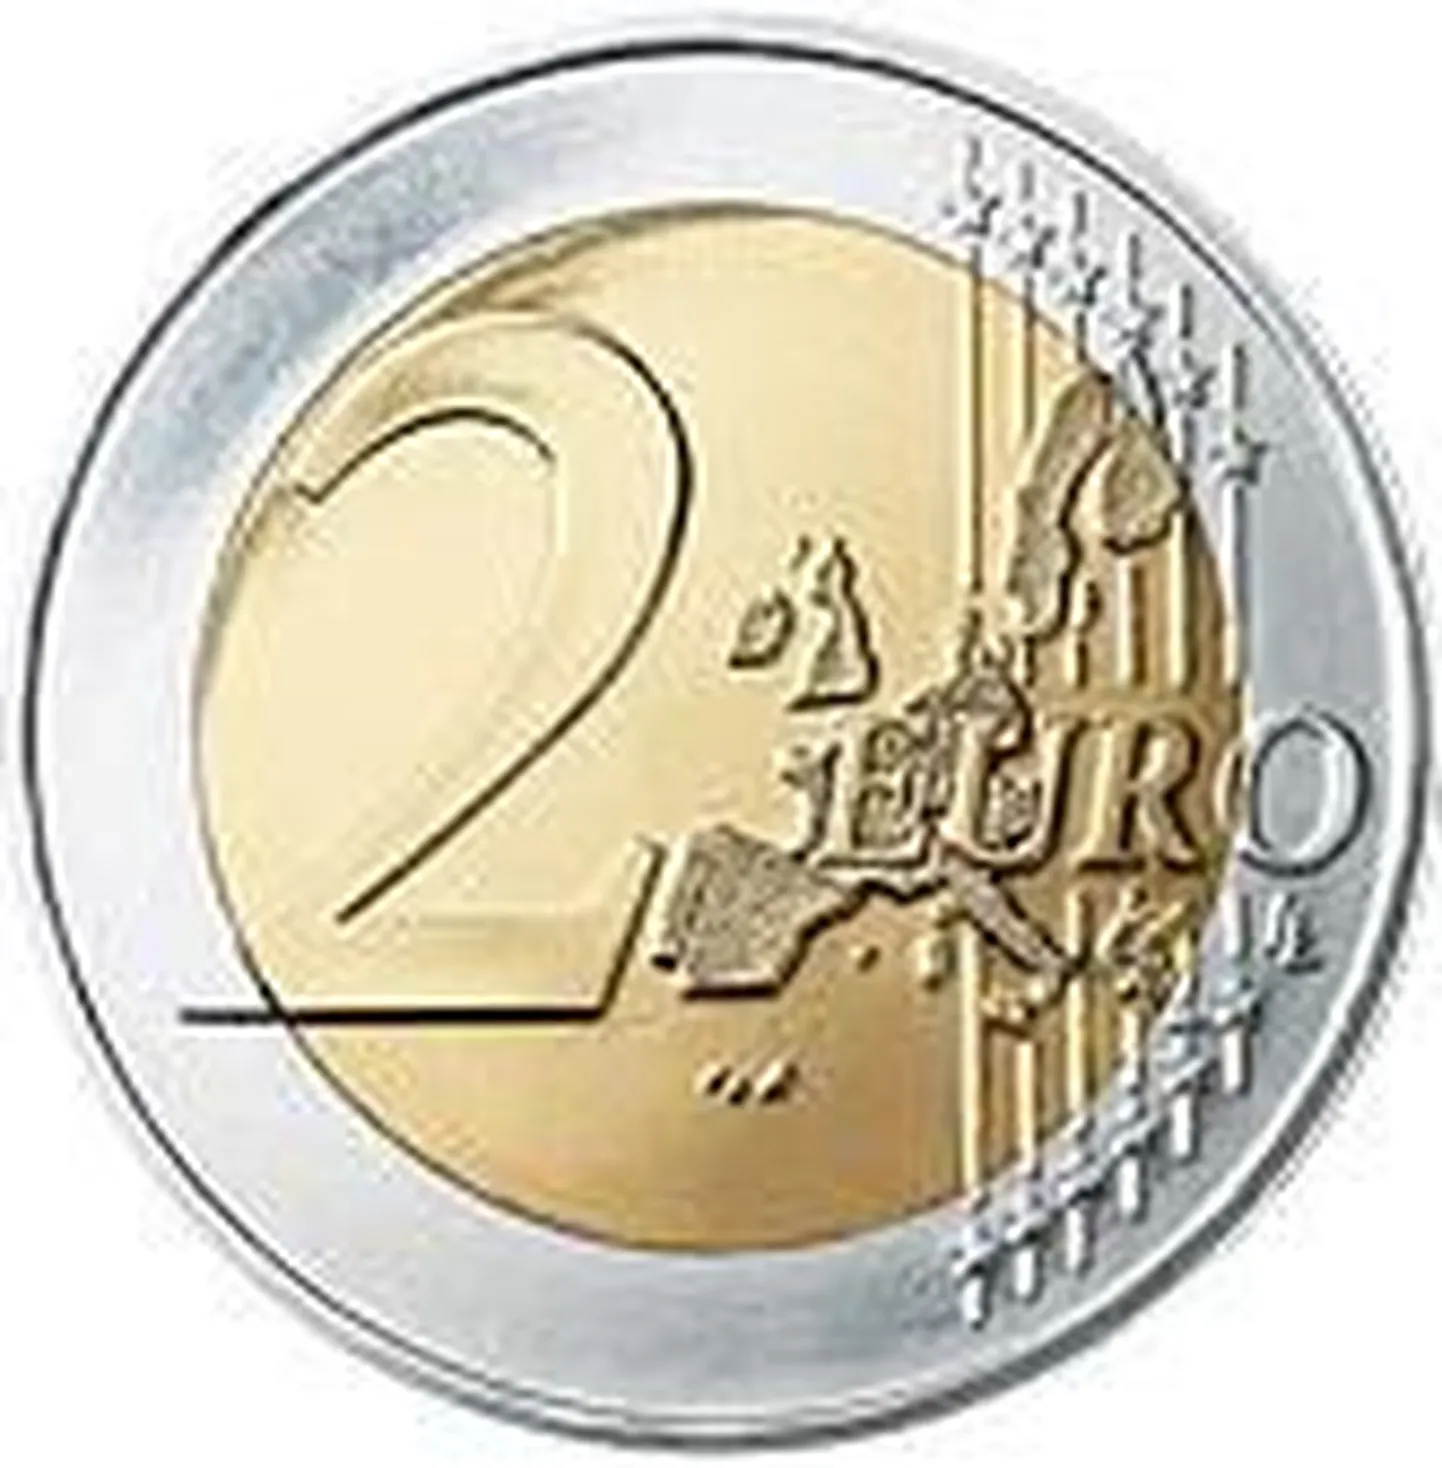 Аверс монеты в 2 евро